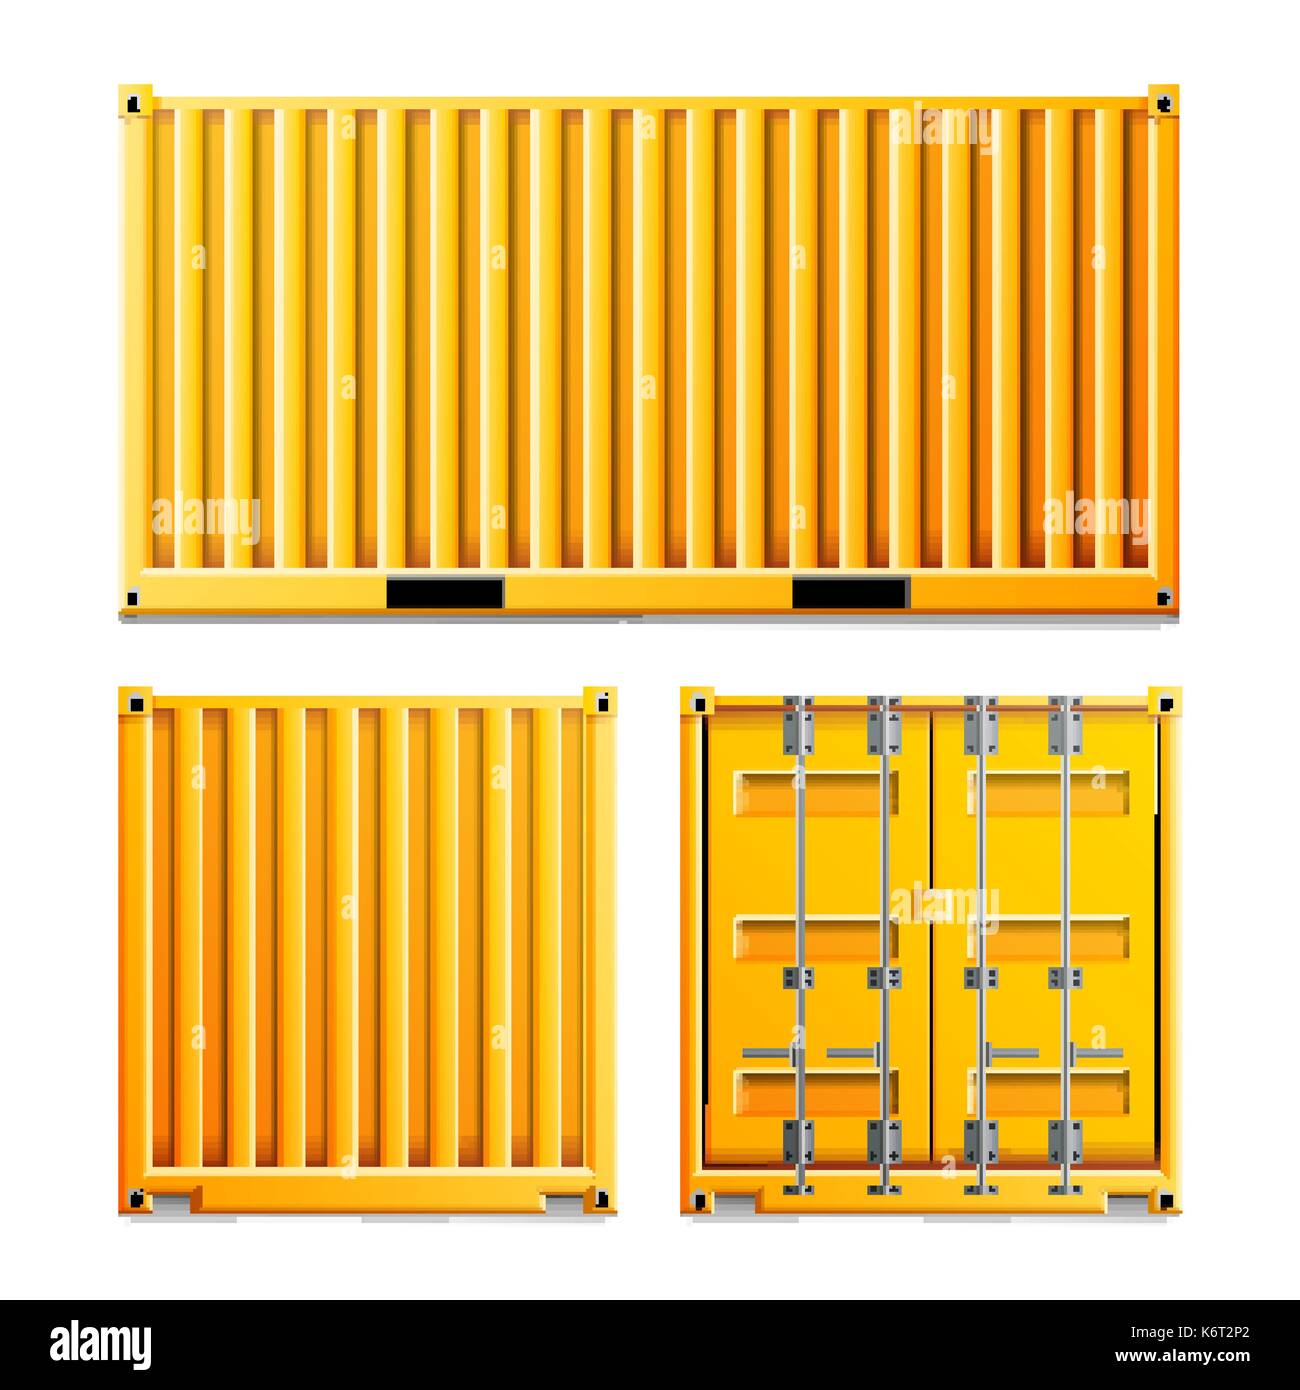 Gelbe Cargo Container Vector. Realistische Metall Classic Cargo Container. Fracht Konzept. Logistik, Transport Mock Up. Zwei Seiten. Auf weissem Hintergrund Abbildung isoliert Stock Vektor